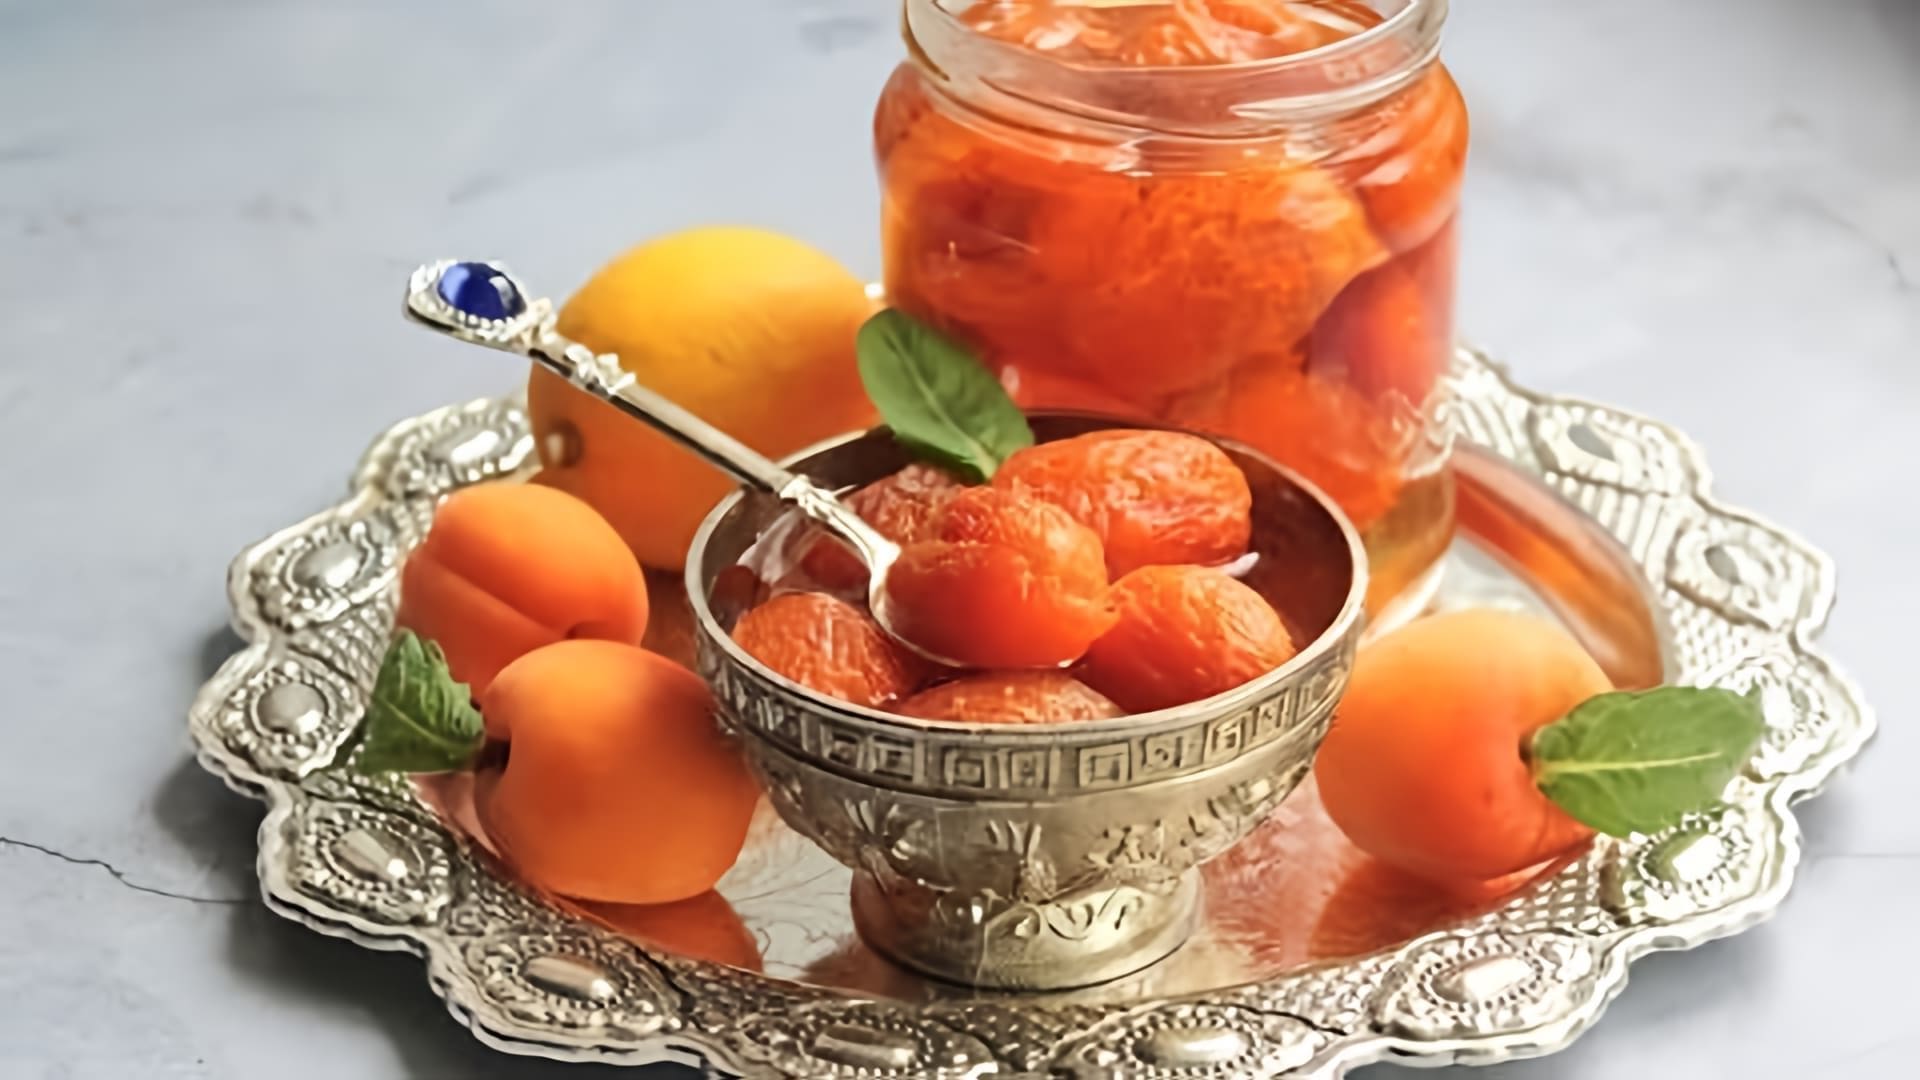 В этом видео демонстрируется процесс приготовления абрикосового варенья с целыми абрикосами и ядрышками внутри